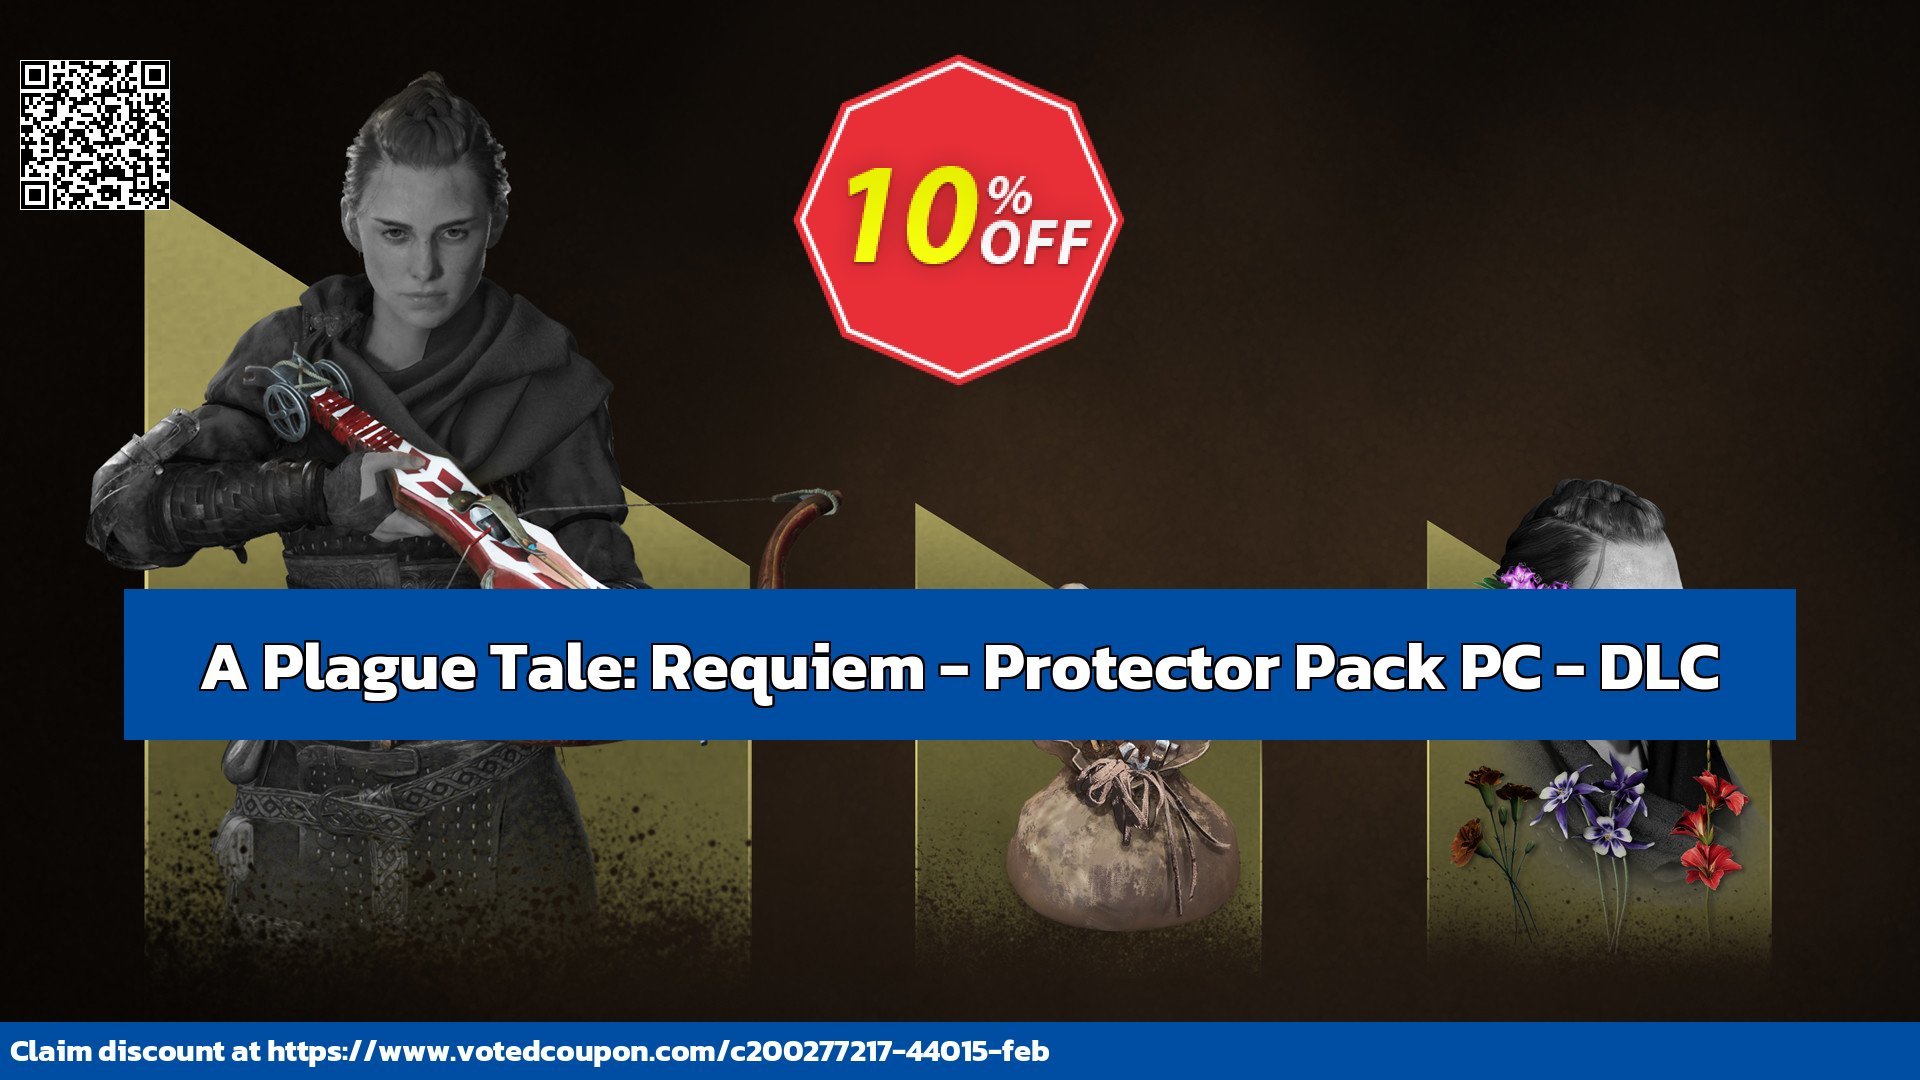 A Plague Tale: Requiem - Protector Pack PC - DLC Coupon, discount A Plague Tale: Requiem - Protector Pack PC - DLC Deal CDkeys. Promotion: A Plague Tale: Requiem - Protector Pack PC - DLC Exclusive Sale offer